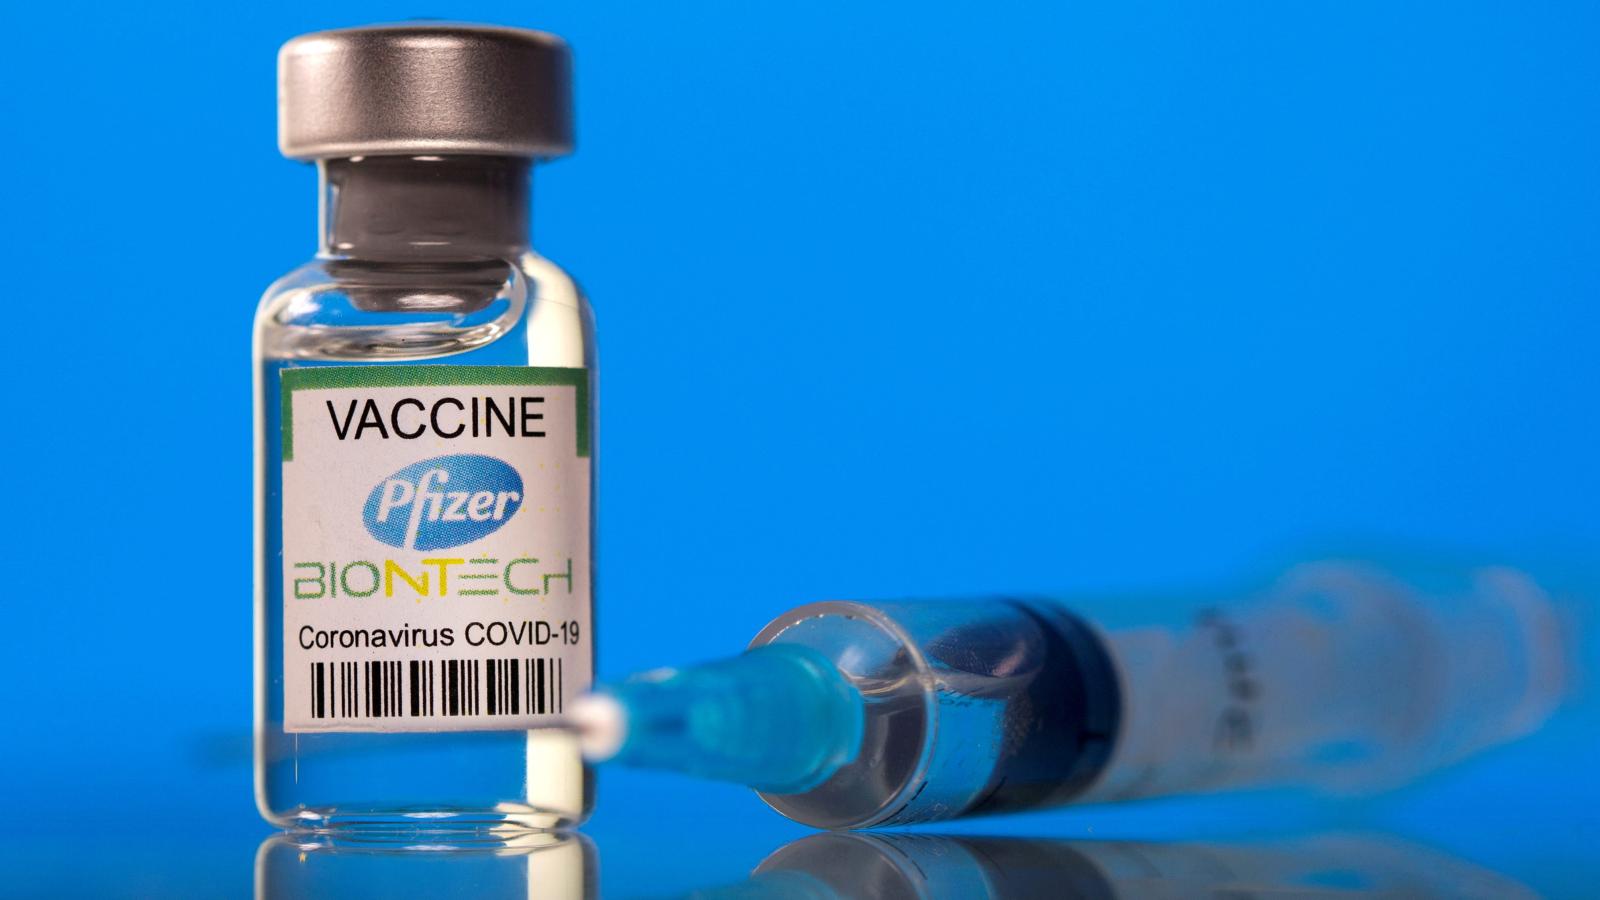 辉瑞和<font color="red">BioNTech</font>的COVID-19疫苗Comirnaty对青少年具有高度保护作用